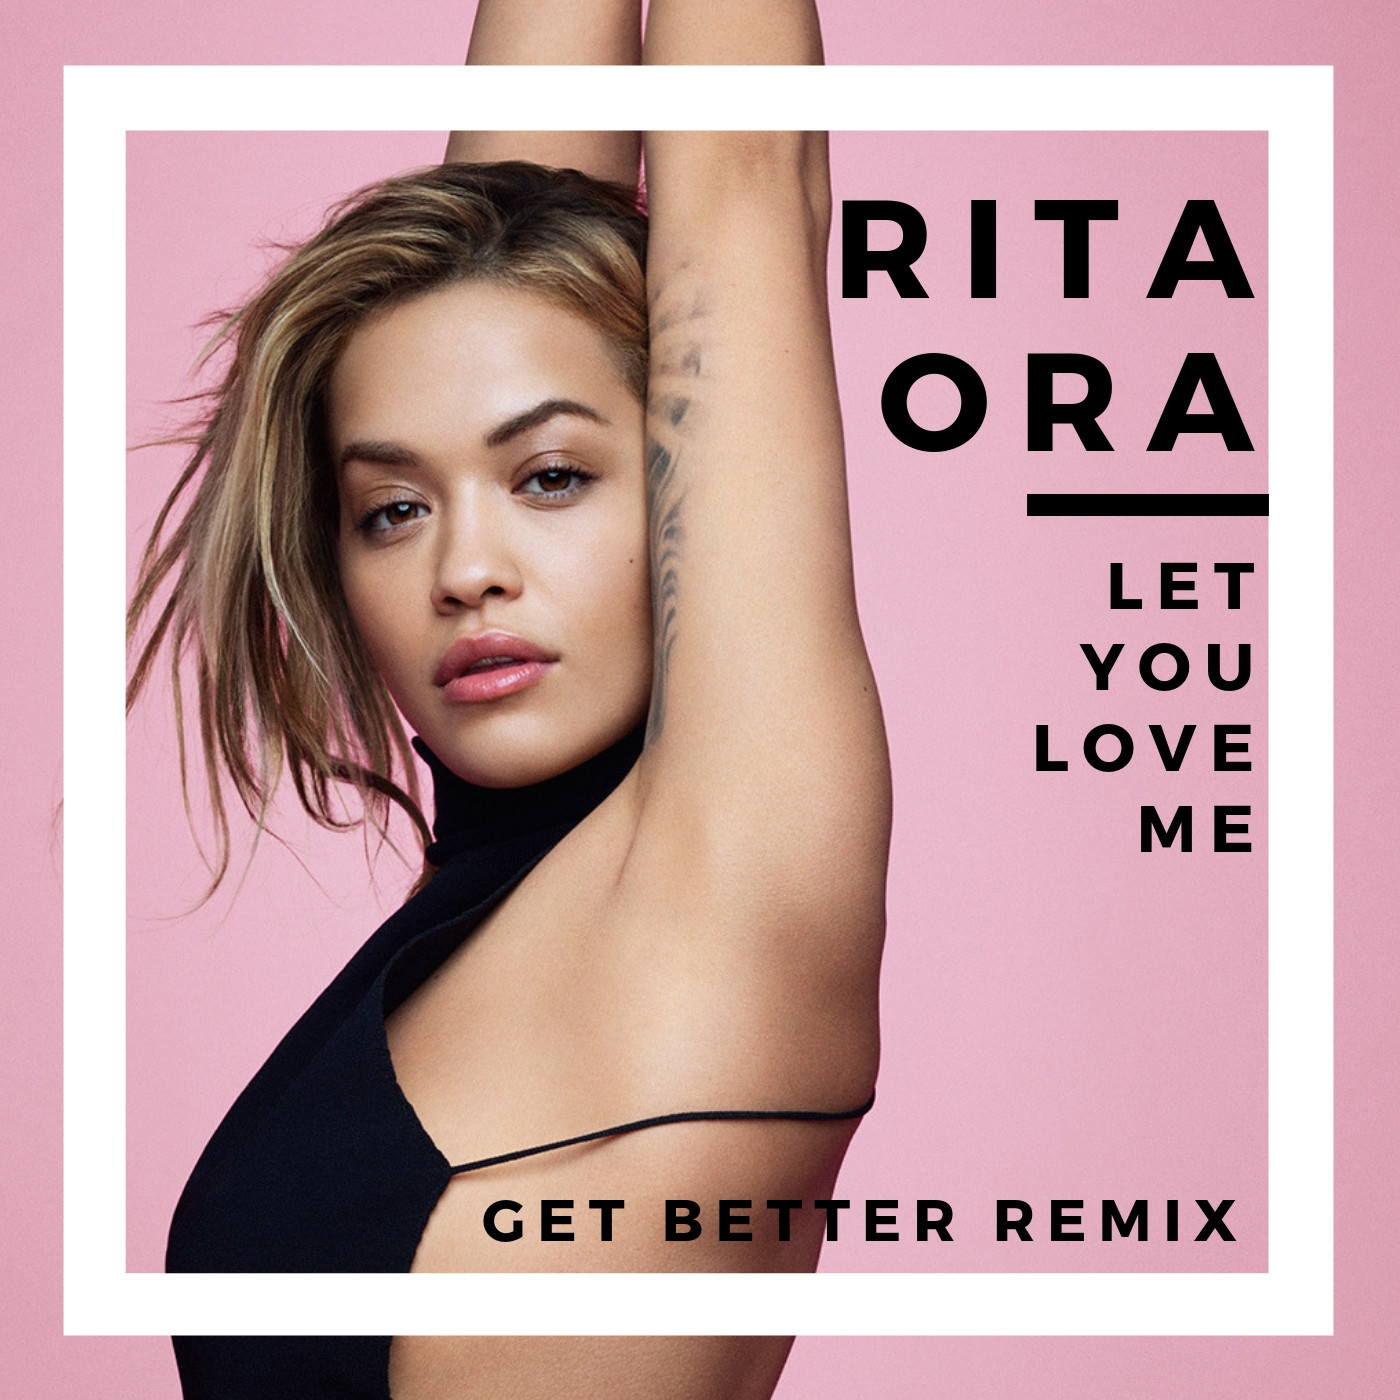 Rita ora let you. Rita ora Let you Love me. Rita ora обложка. Rita ora обложка альбома.